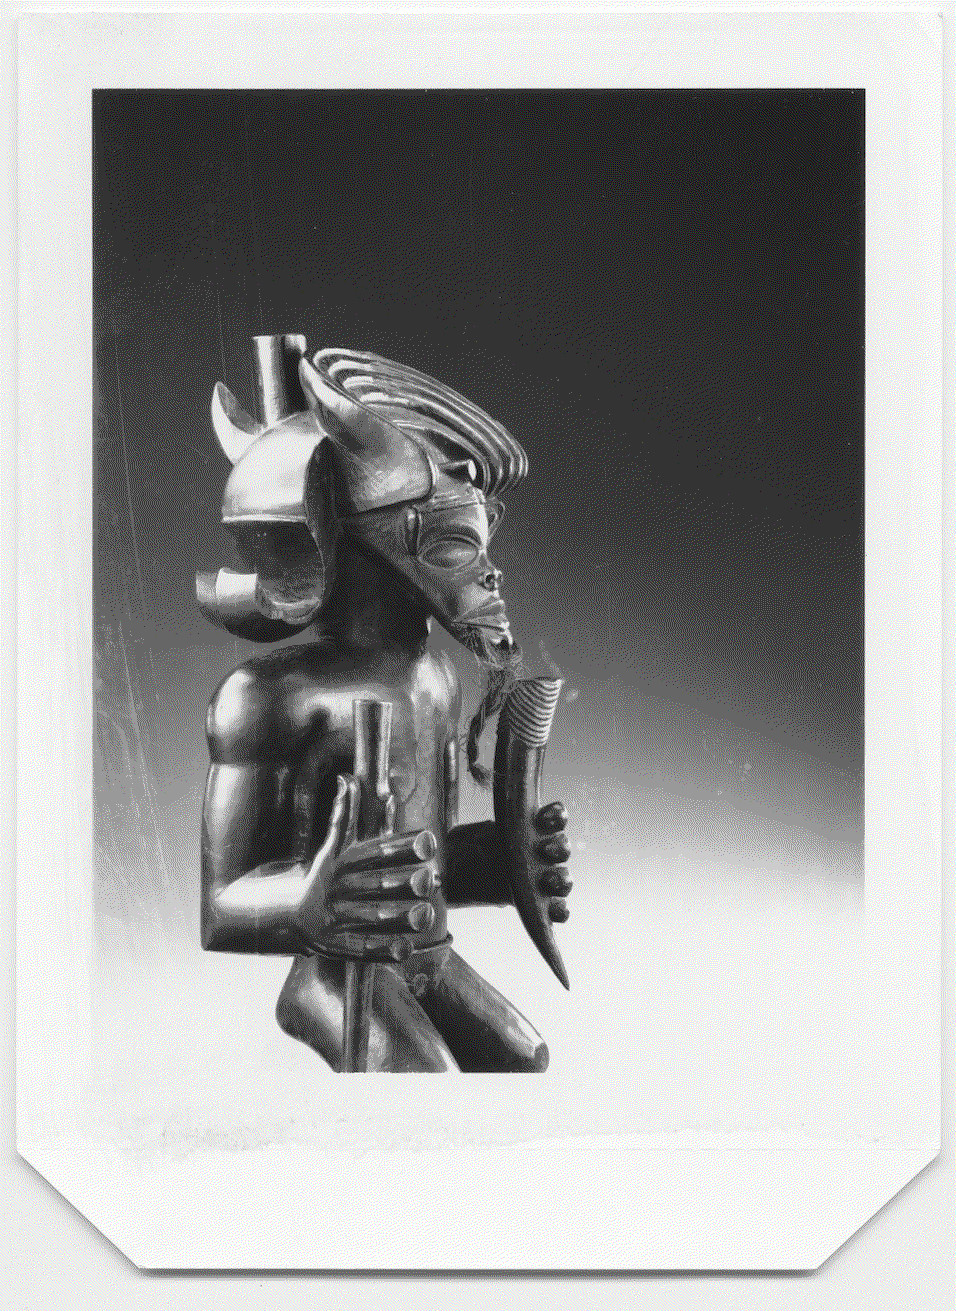 The Chokwe Tshibinda Ilunga figure from the Kimbel Art Museum. Image courtesy of Hughes Dubois, 1988.